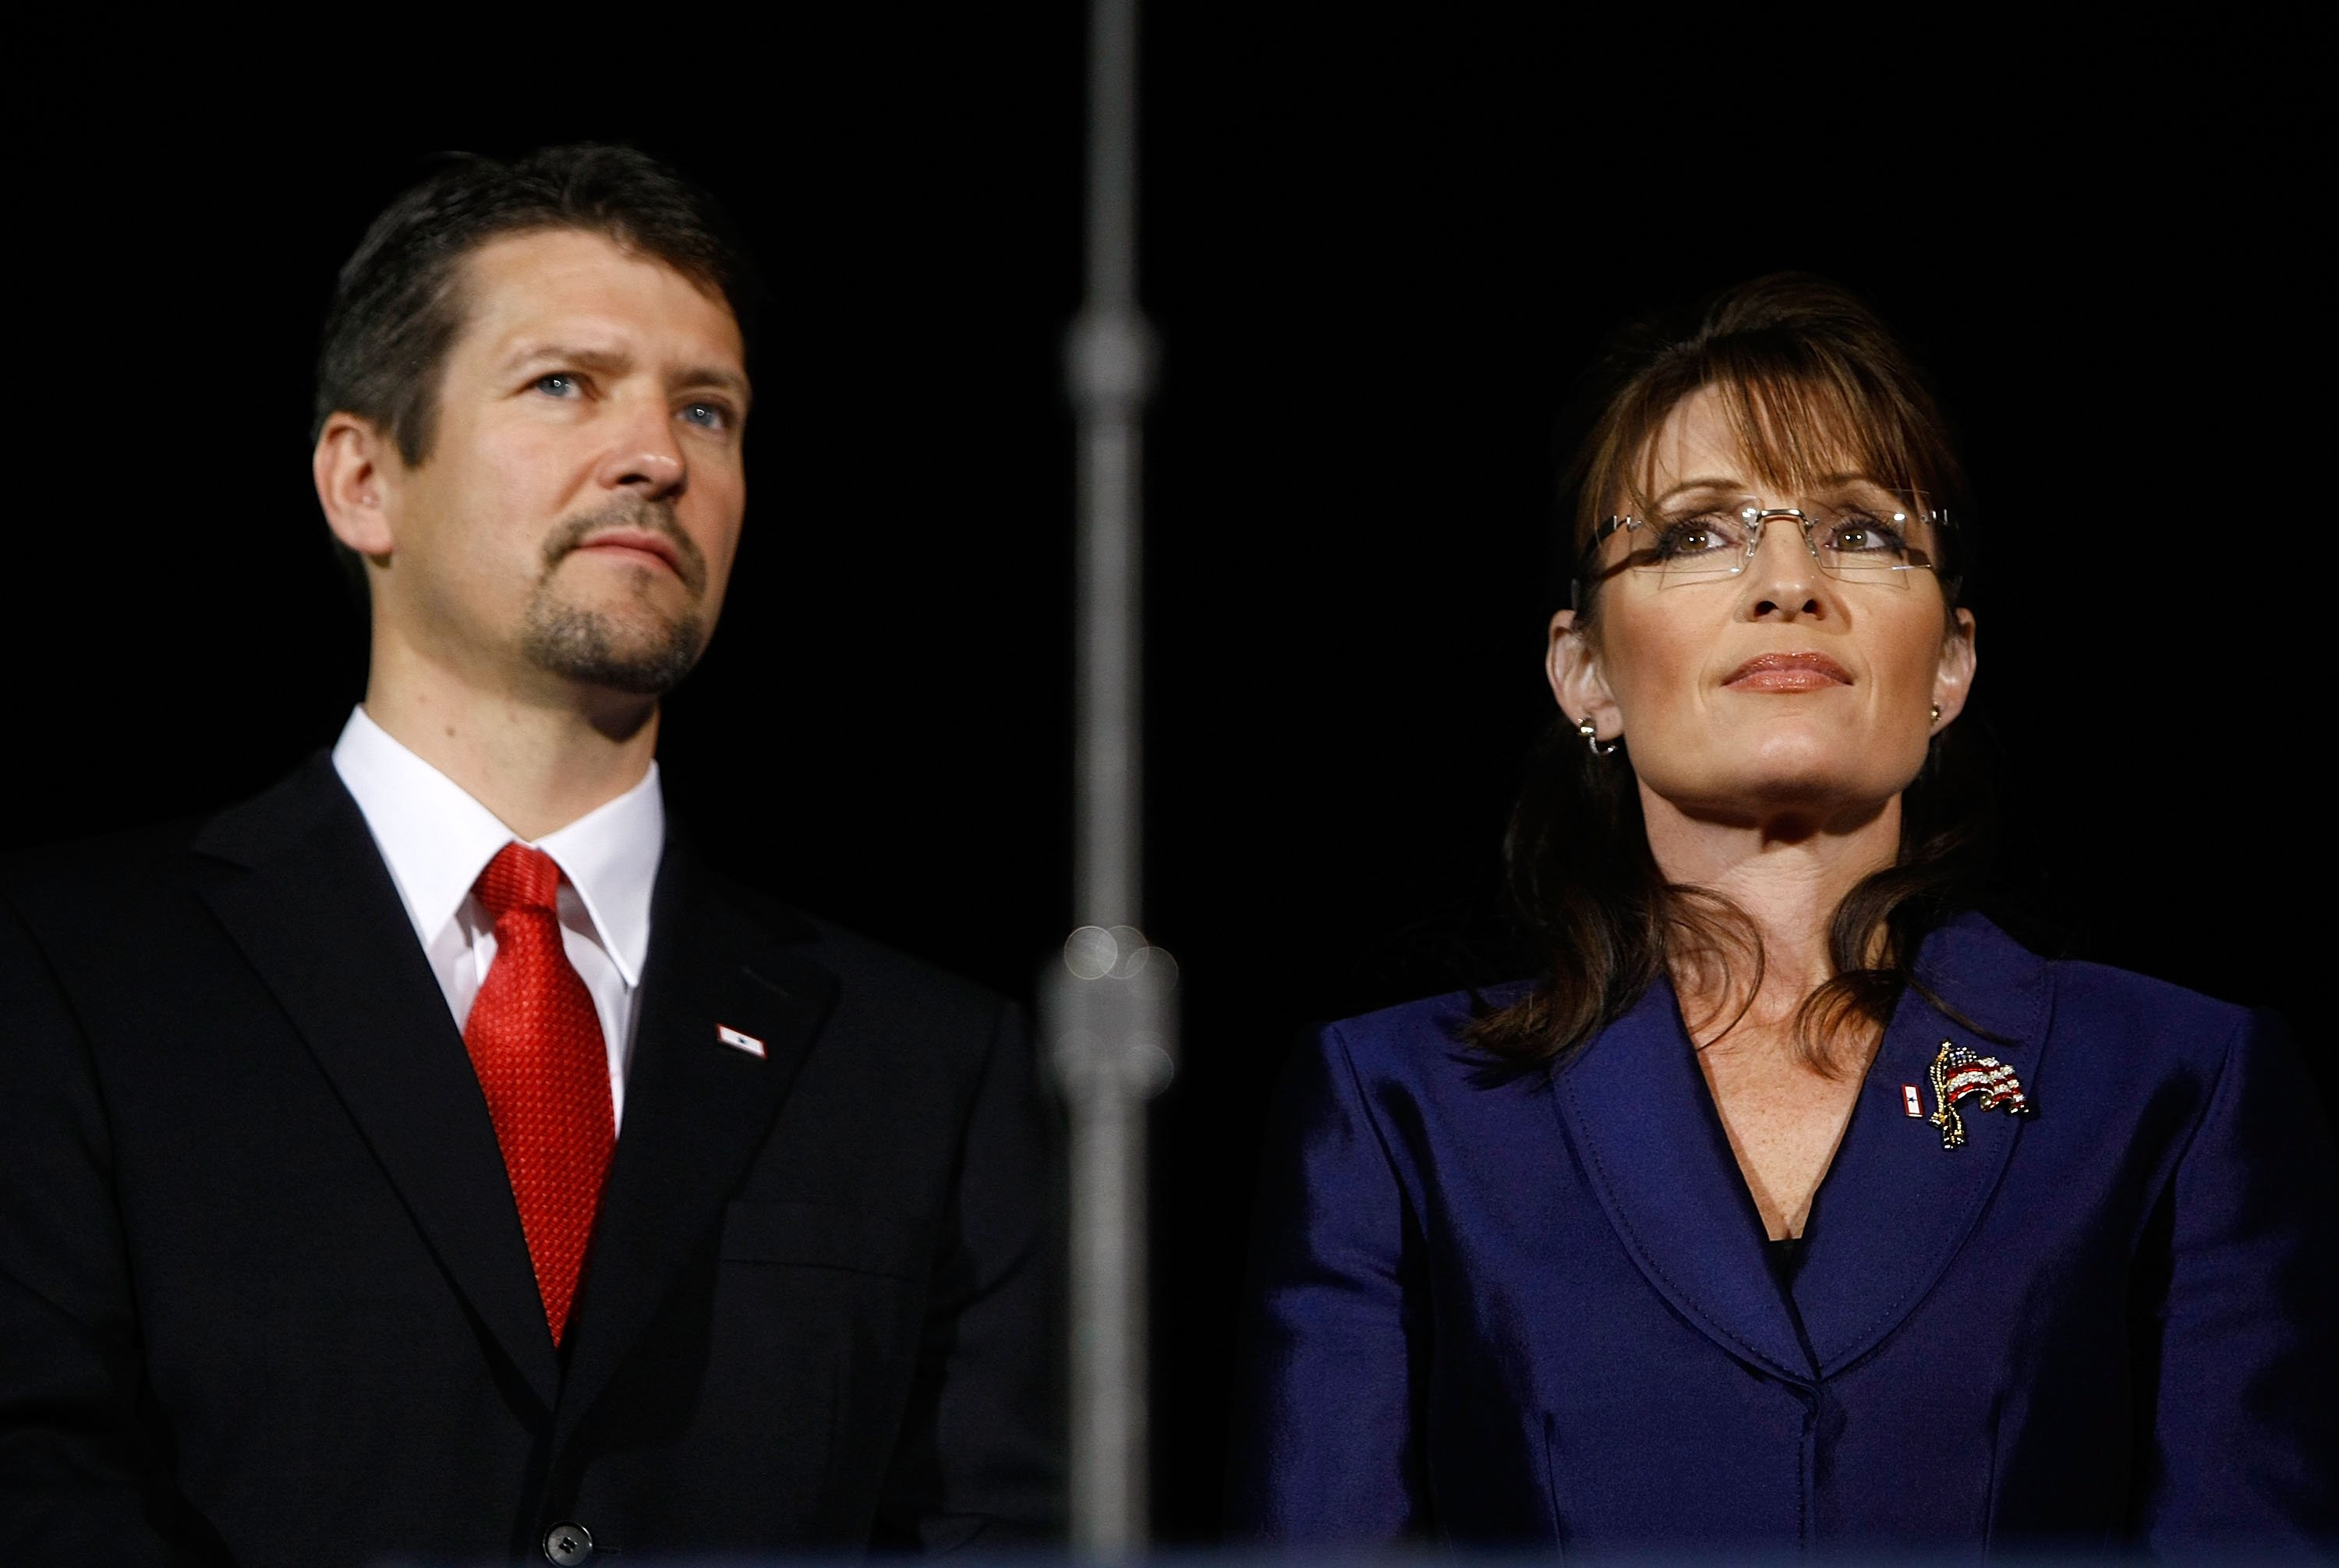 Sarah Palin and ex-husband Todd Palin at the Arizona Biltmore Resort & Spa on November 4, 2008, in Phoenix, Arizona | Source: Getty Images